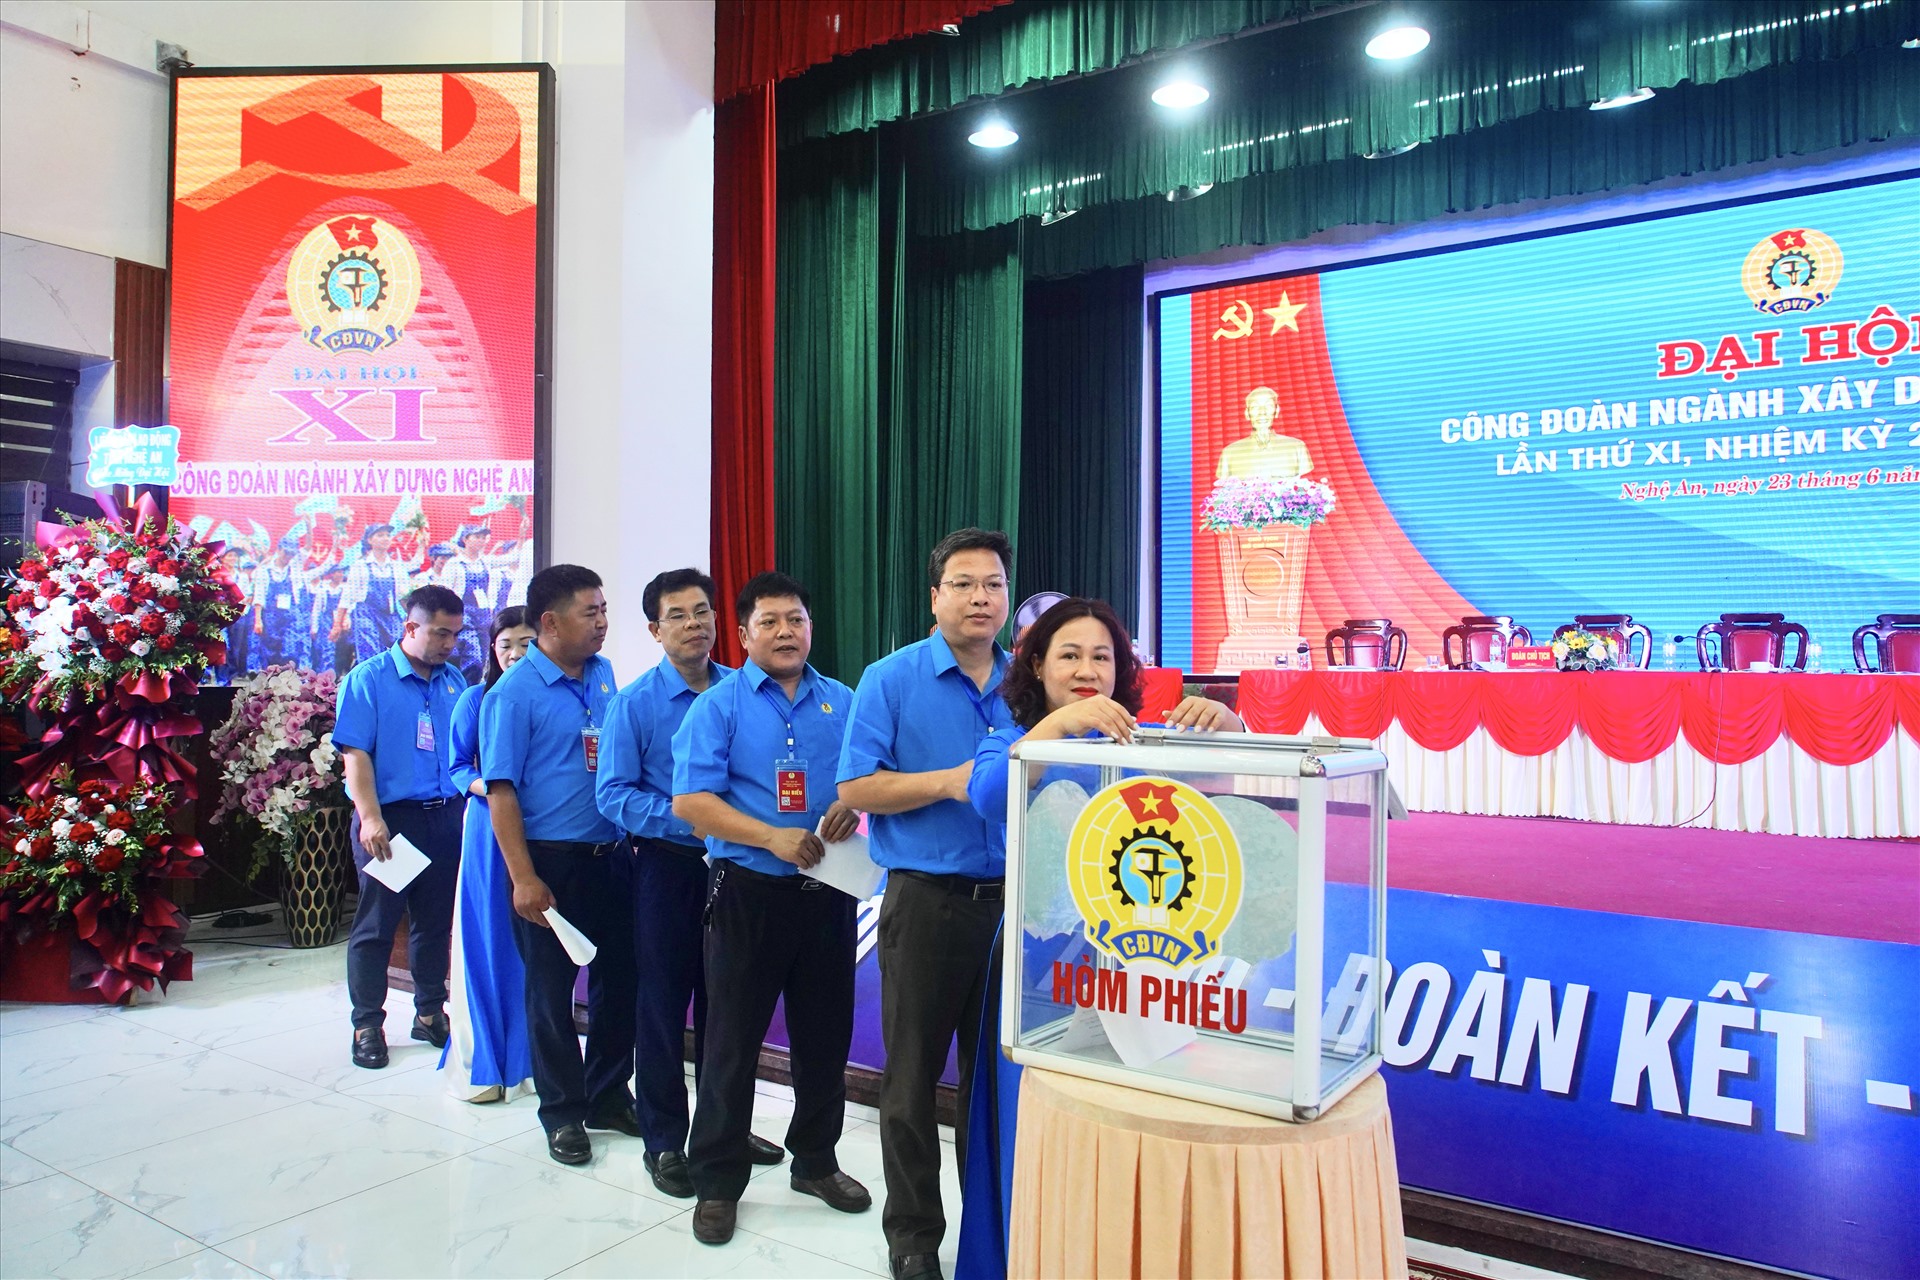 Bỏ phiếu bầu Ban Chấp hành Công đoàn ngành Xây dựng Nghệ An nhiệm kỳ 2023-2028. Ảnh: Quỳnh Trang